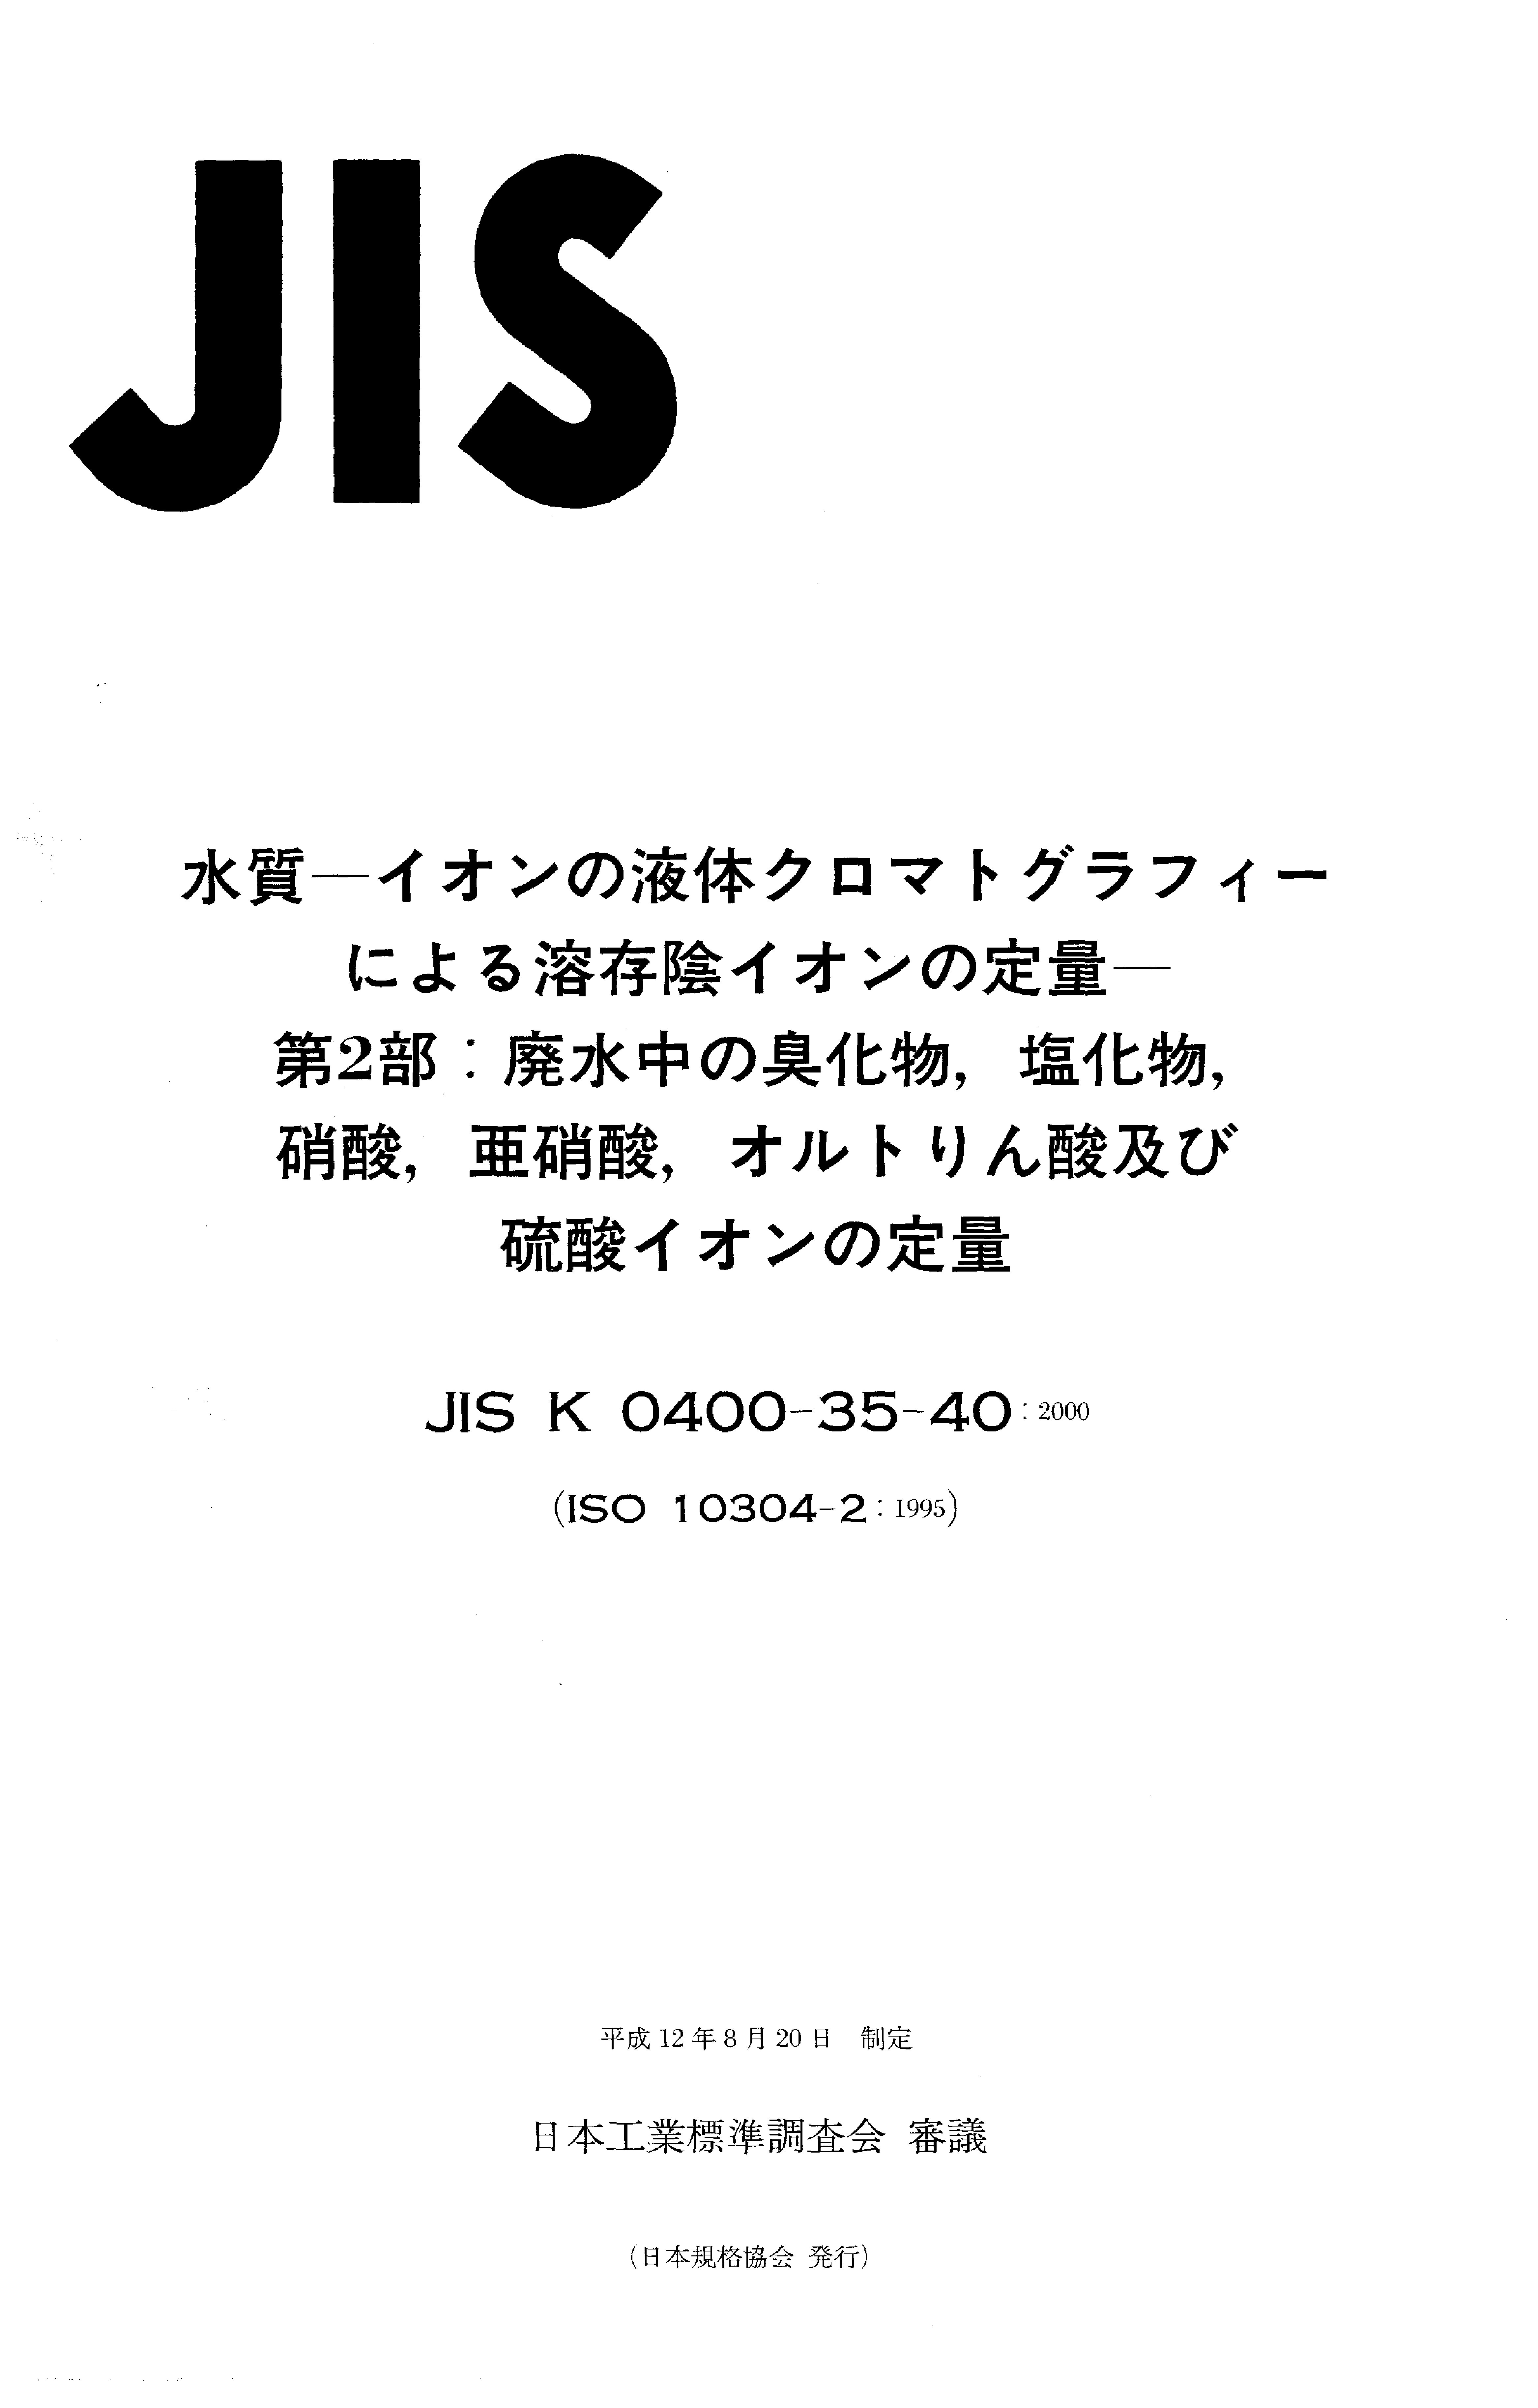 JIS K 0400-35-40:2000